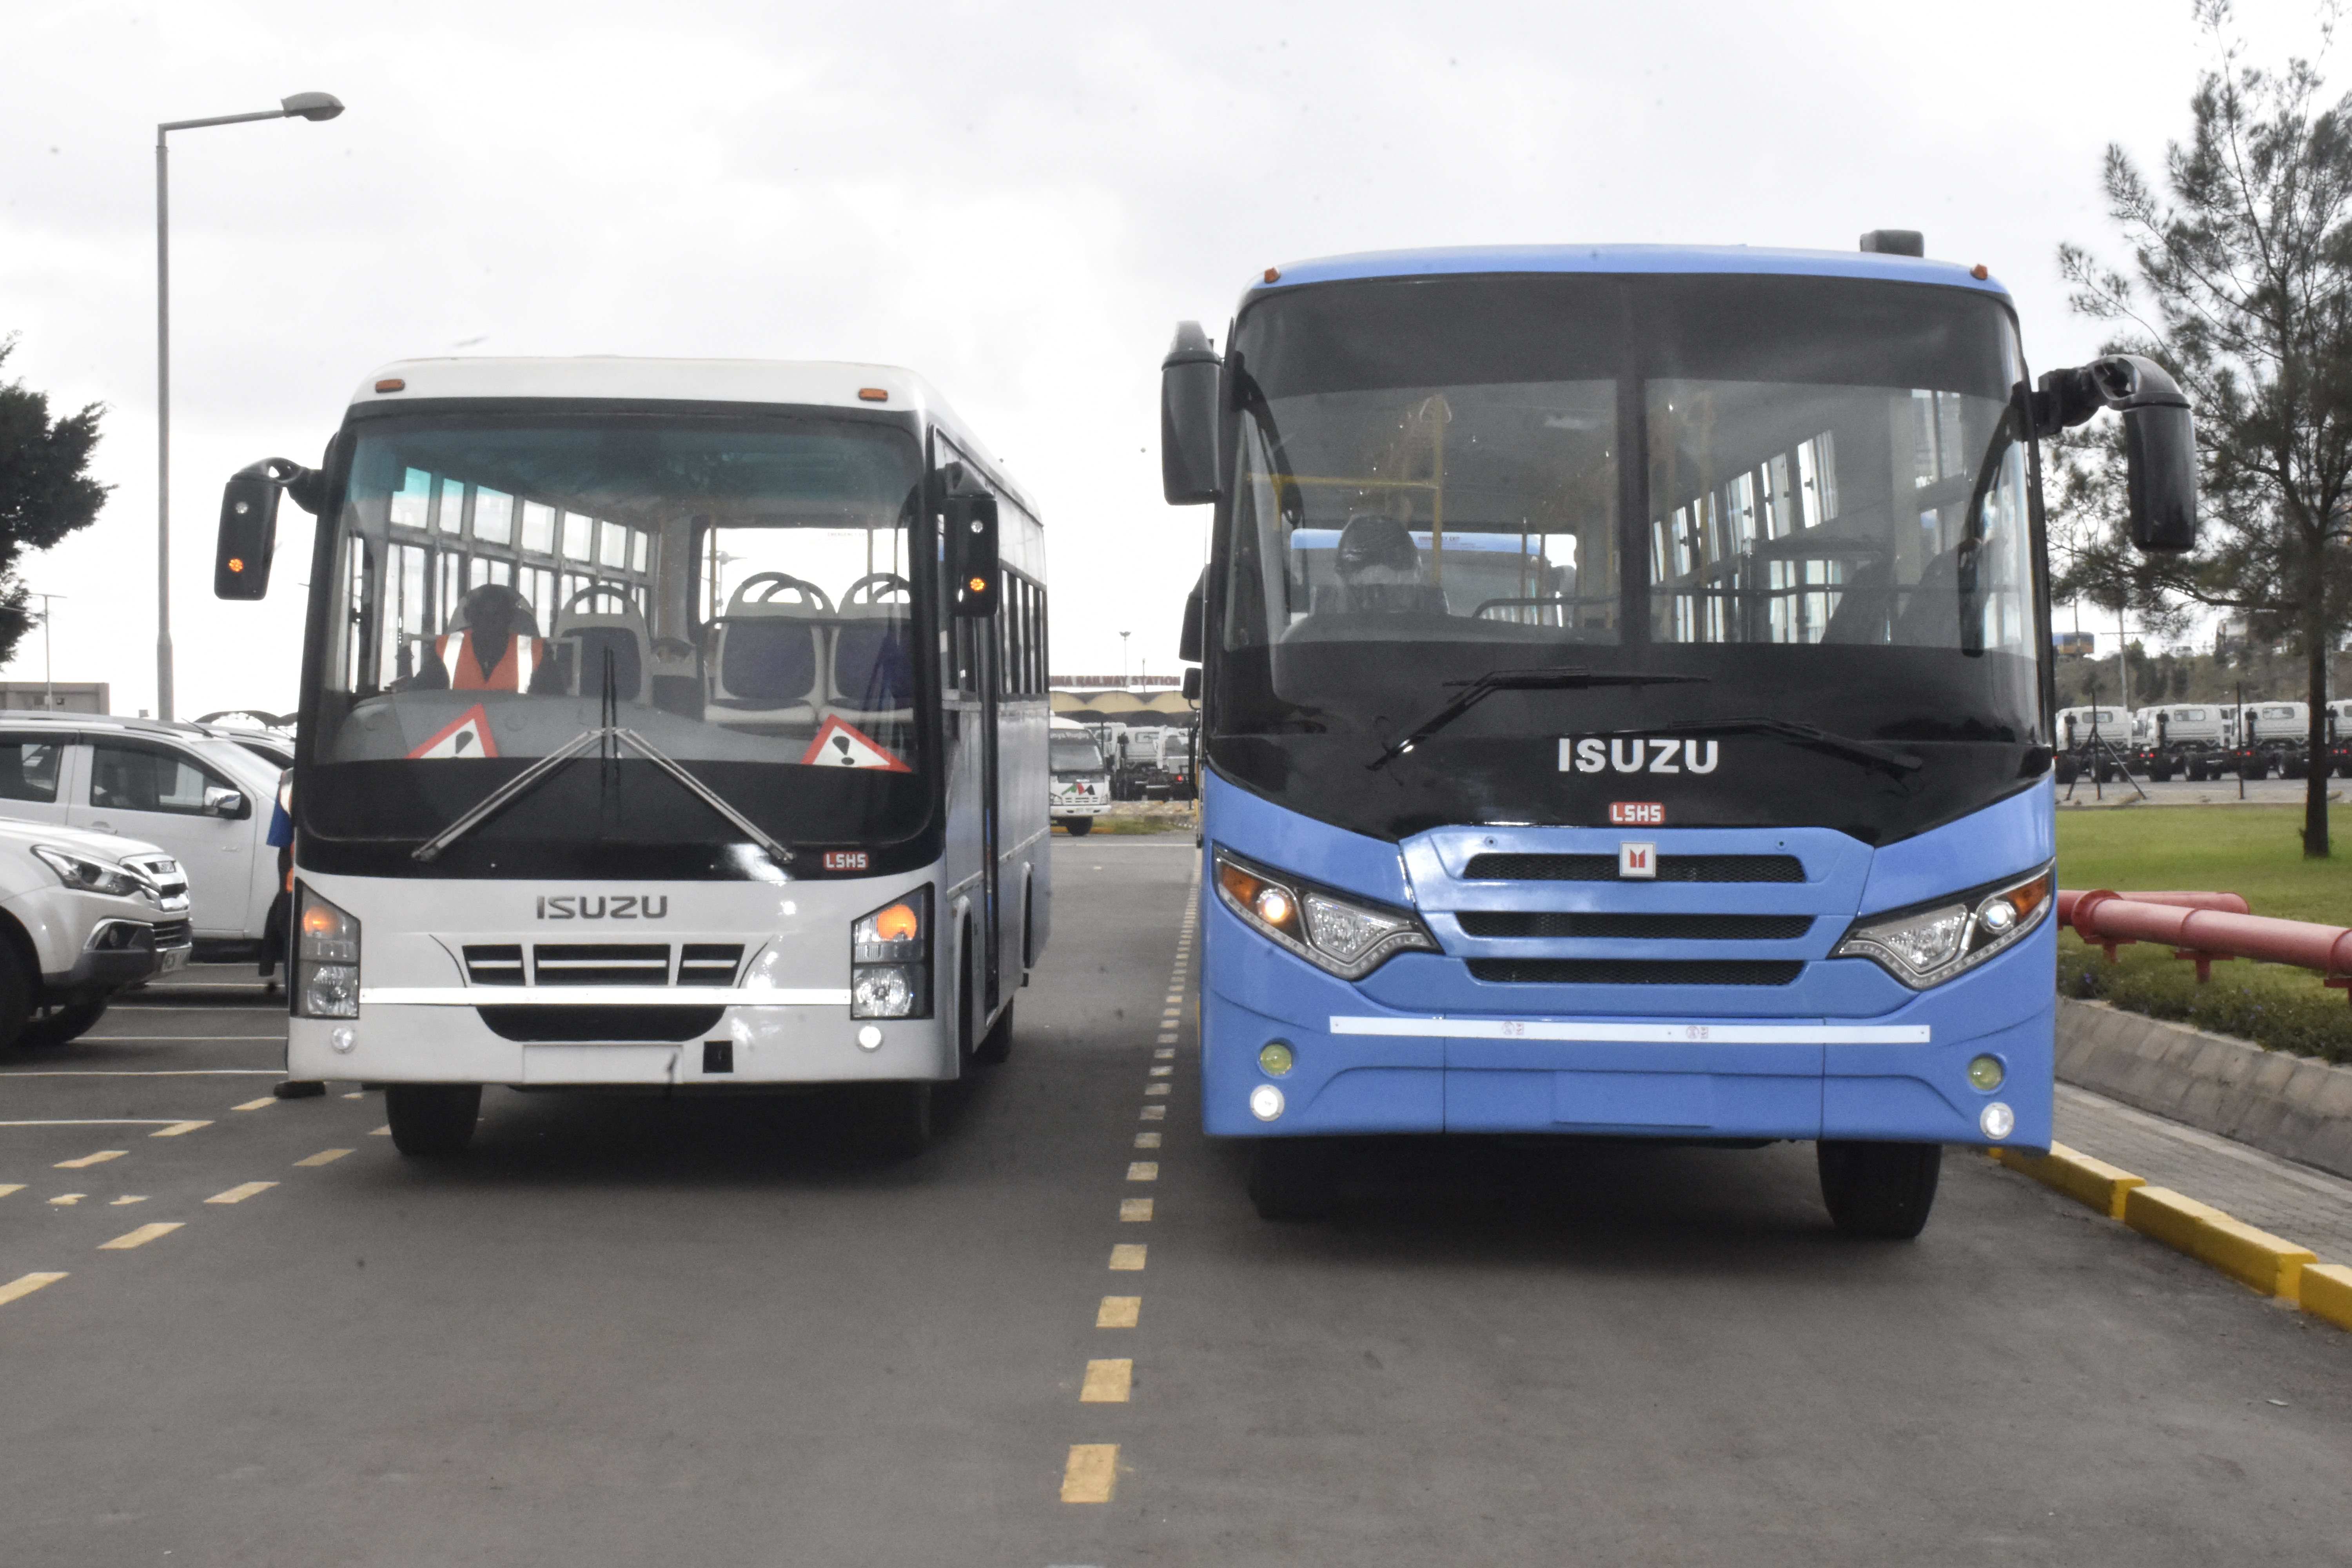 isuzu unveils locally assembled brt buses in kenya